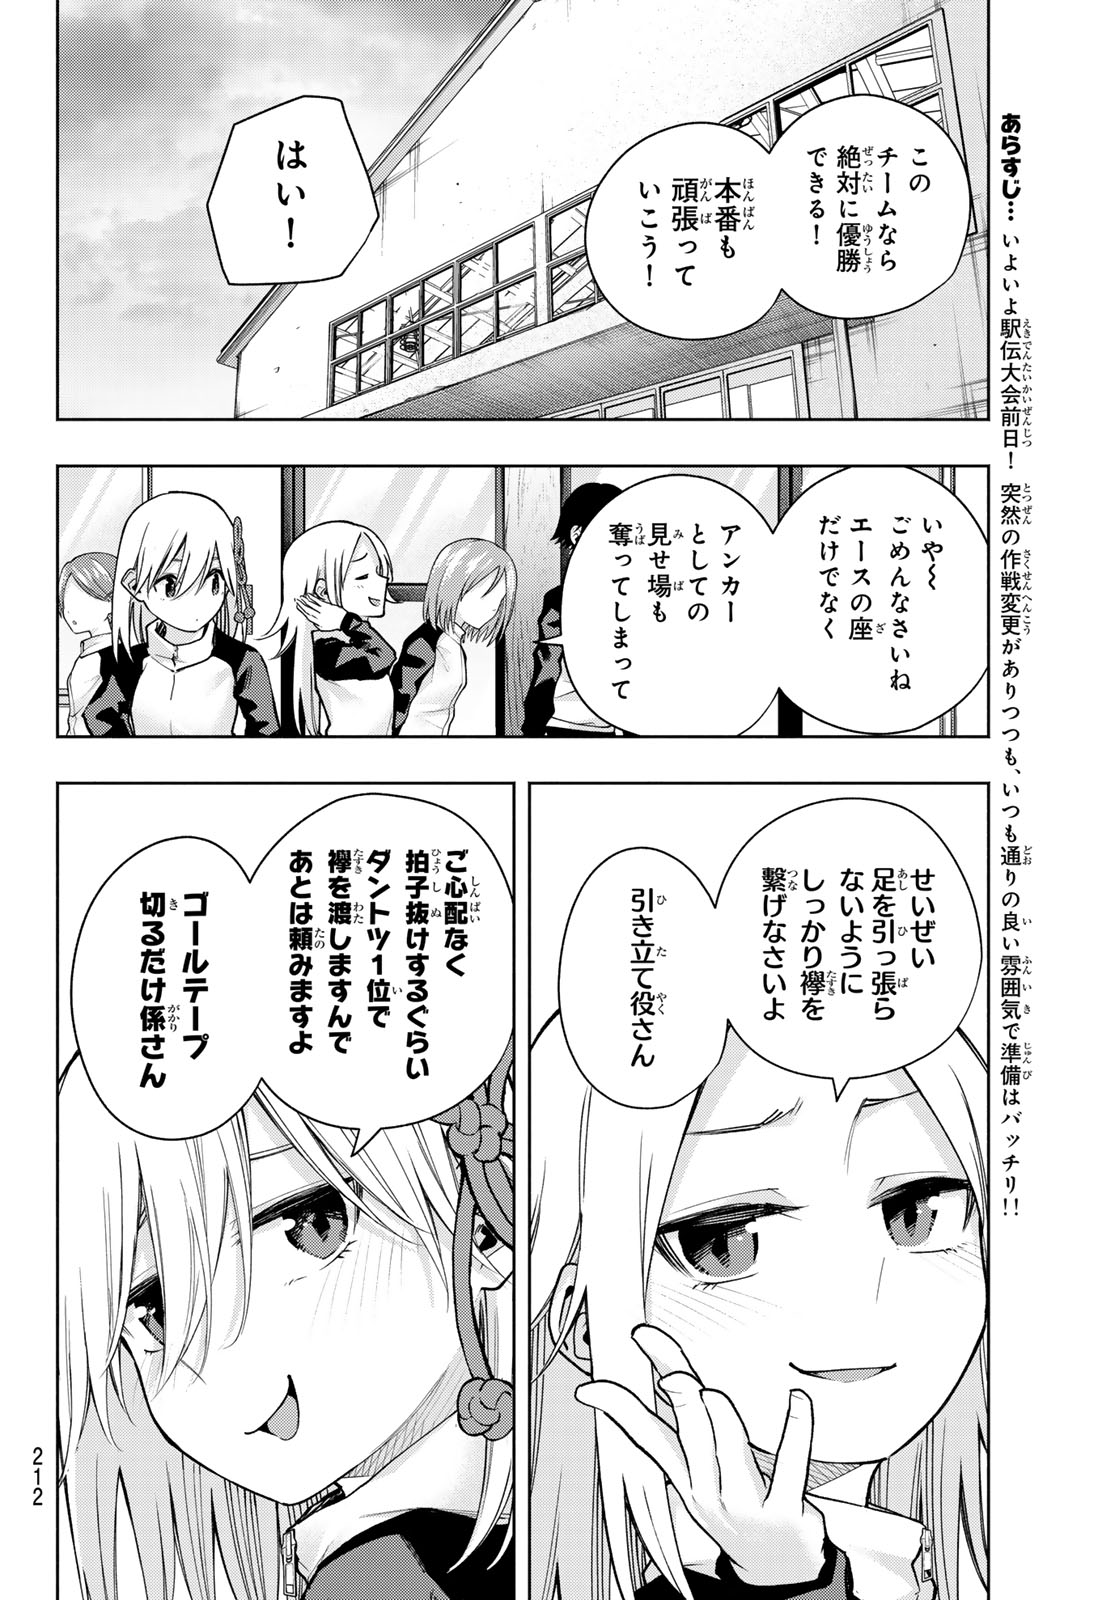 Amagami-san Chi no Enmusubi - Chapter 143 - Page 2